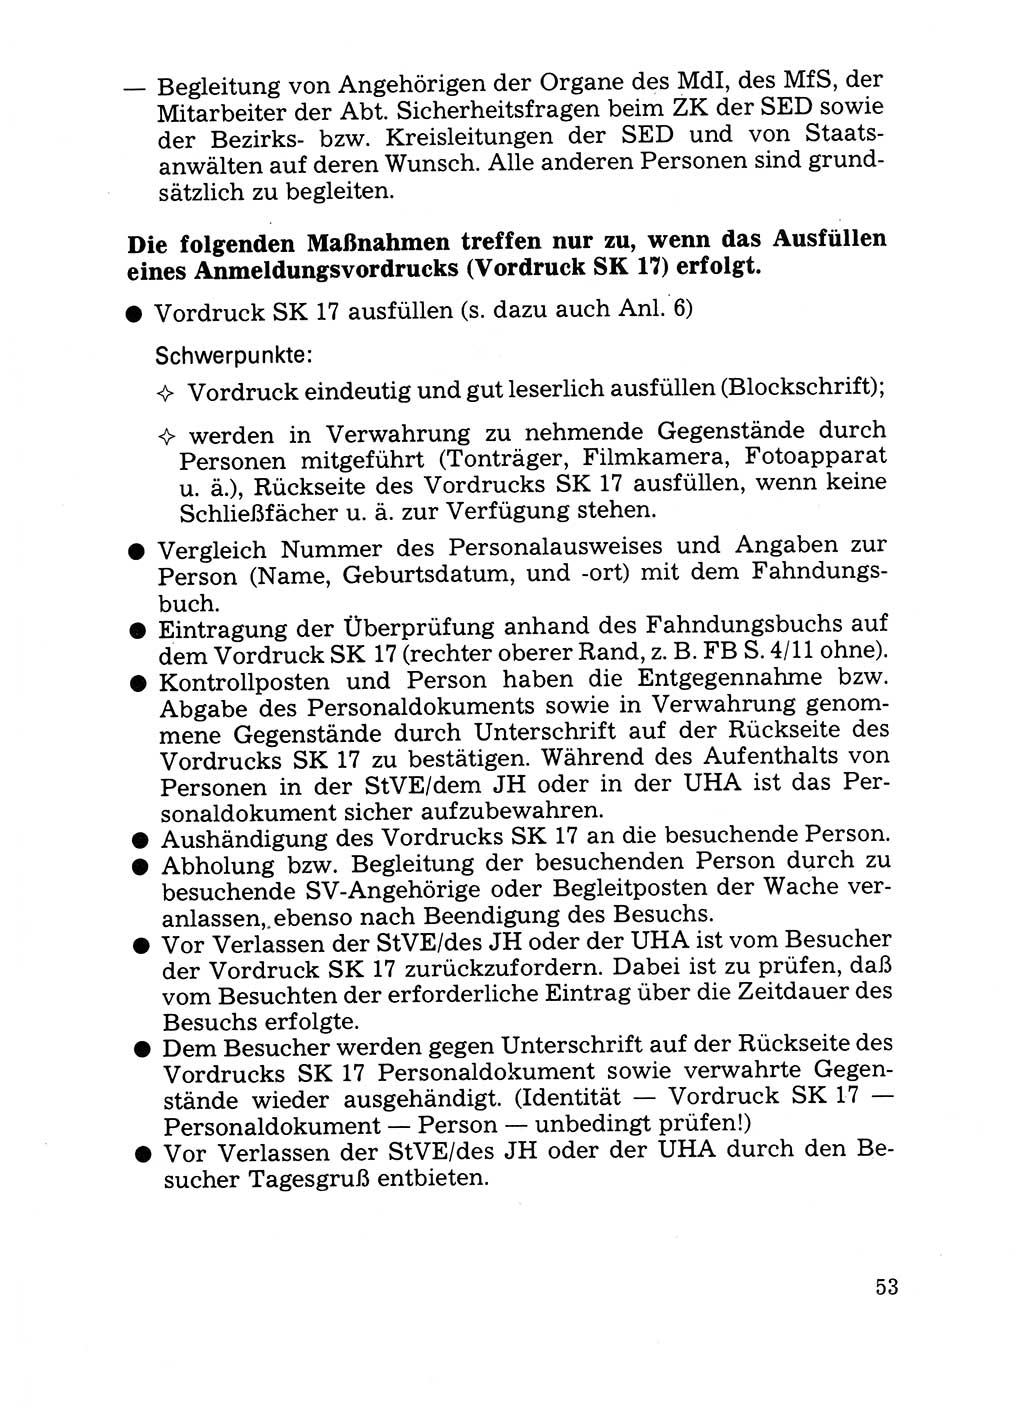 Handbuch für operative Dienste, Abteilung Strafvollzug (SV) [Ministerium des Innern (MdI) Deutsche Demokratische Republik (DDR)] 1981, Seite 53 (Hb. op. D. Abt. SV MdI DDR 1981, S. 53)